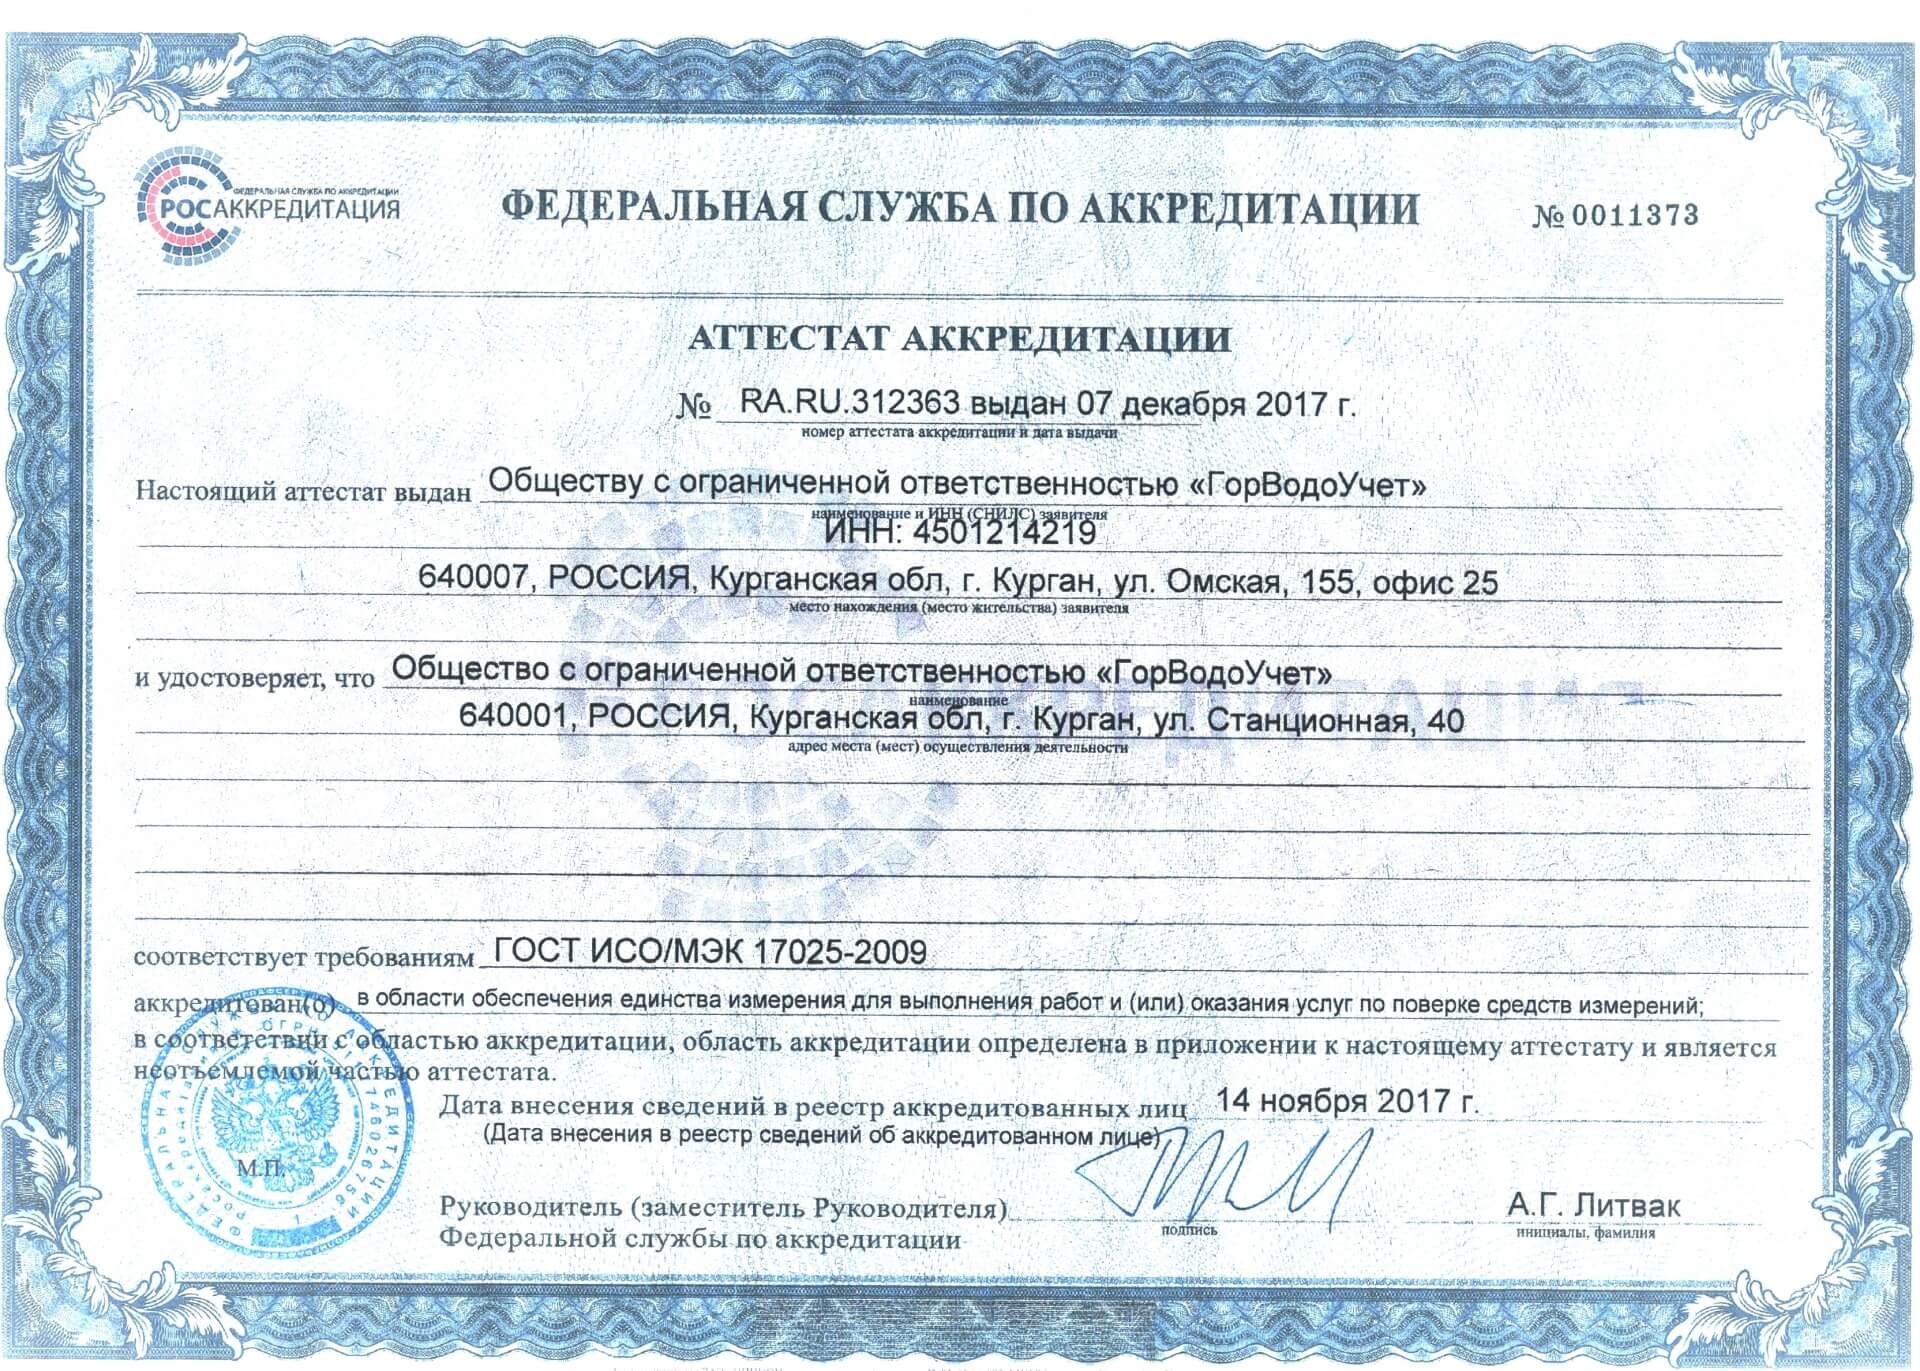 Сертификат Метрологическая служба ООО "ГорВодоУчет"